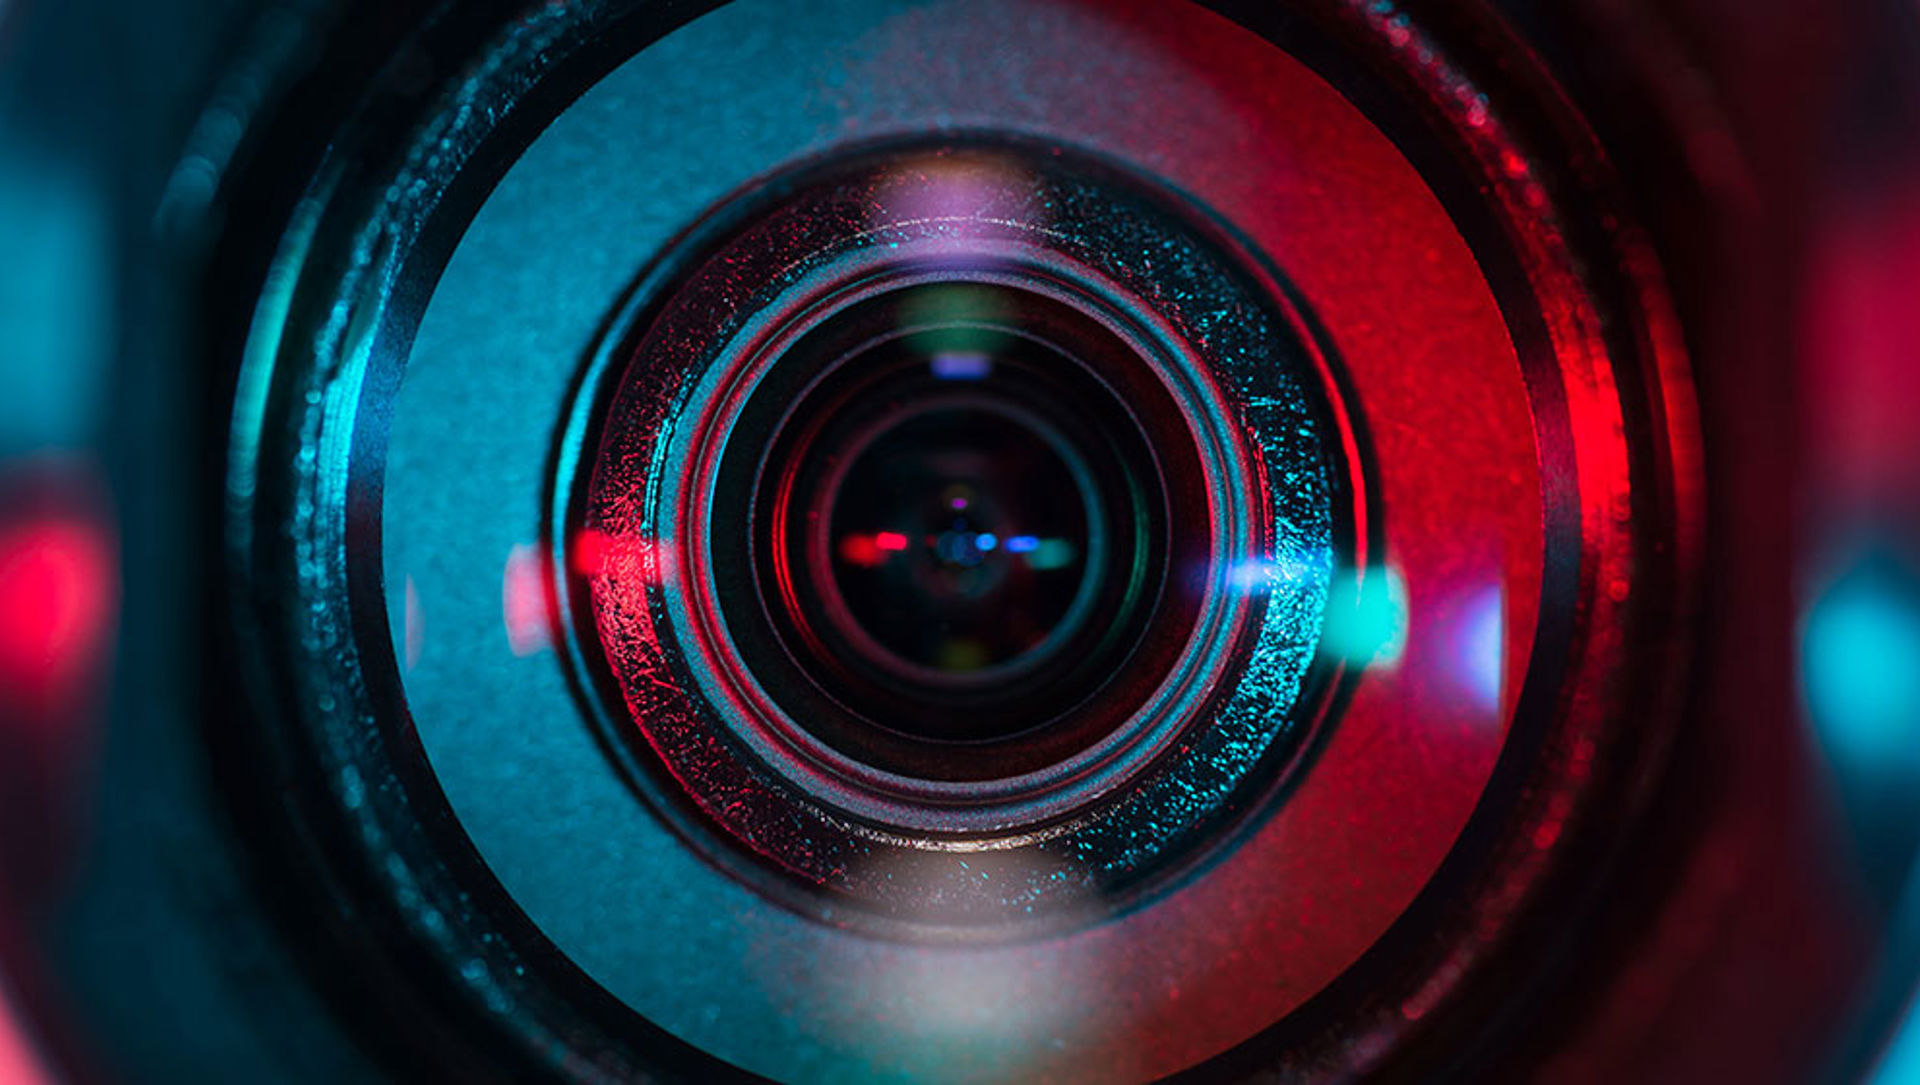 A close-up photo of a camera lens